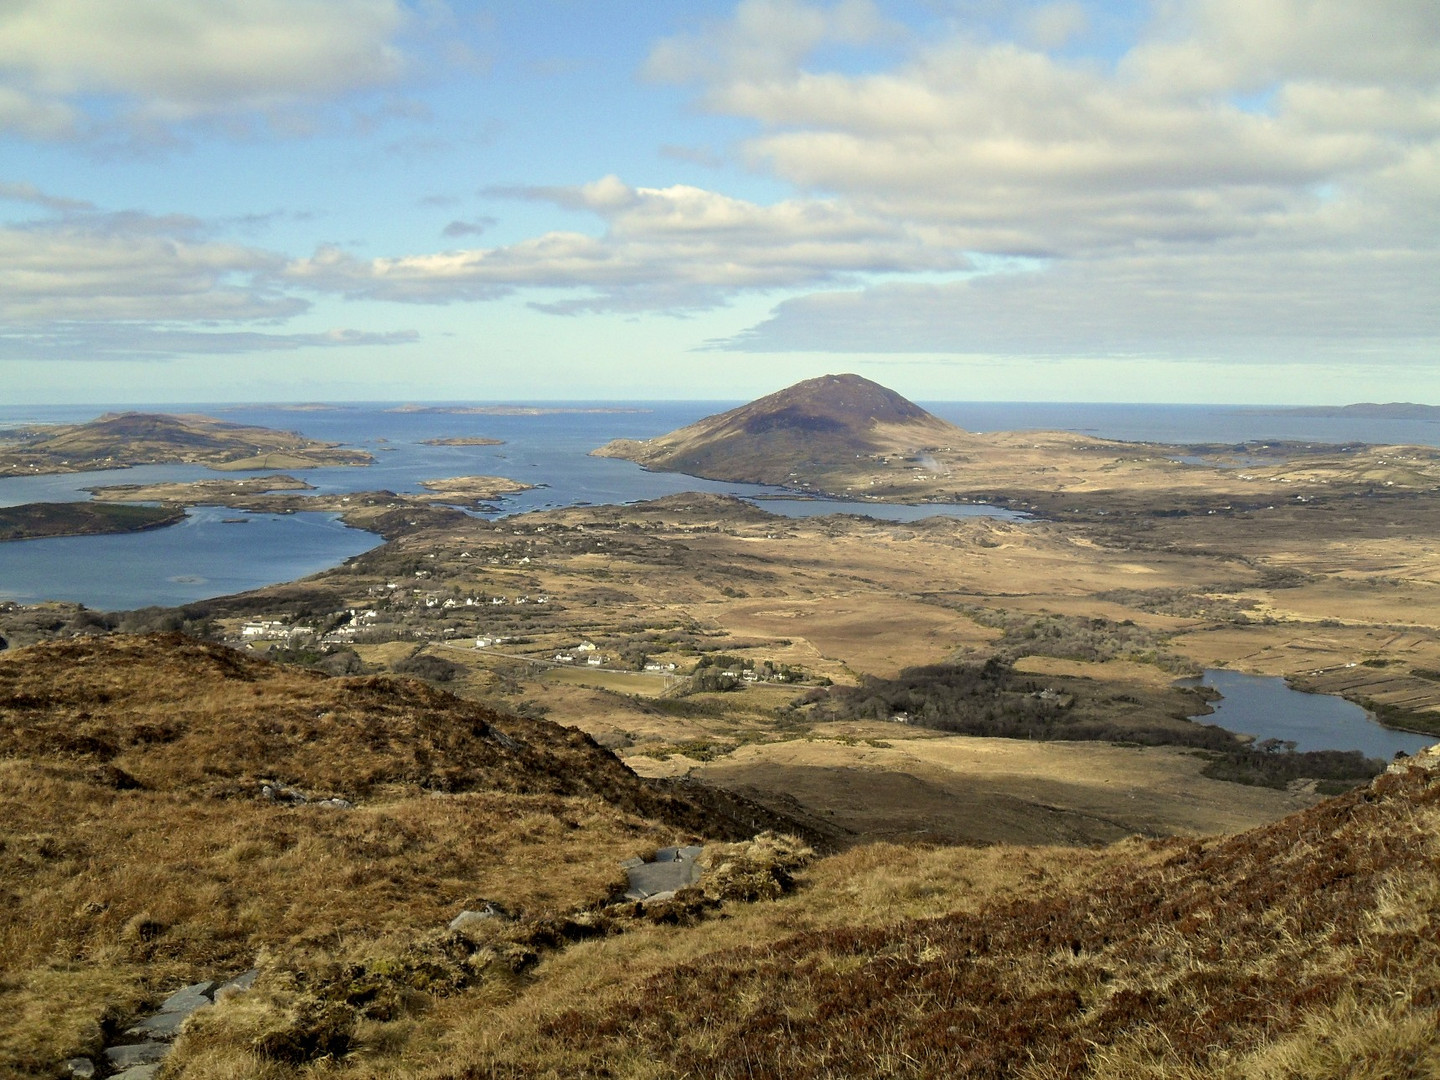 Panorama Irland